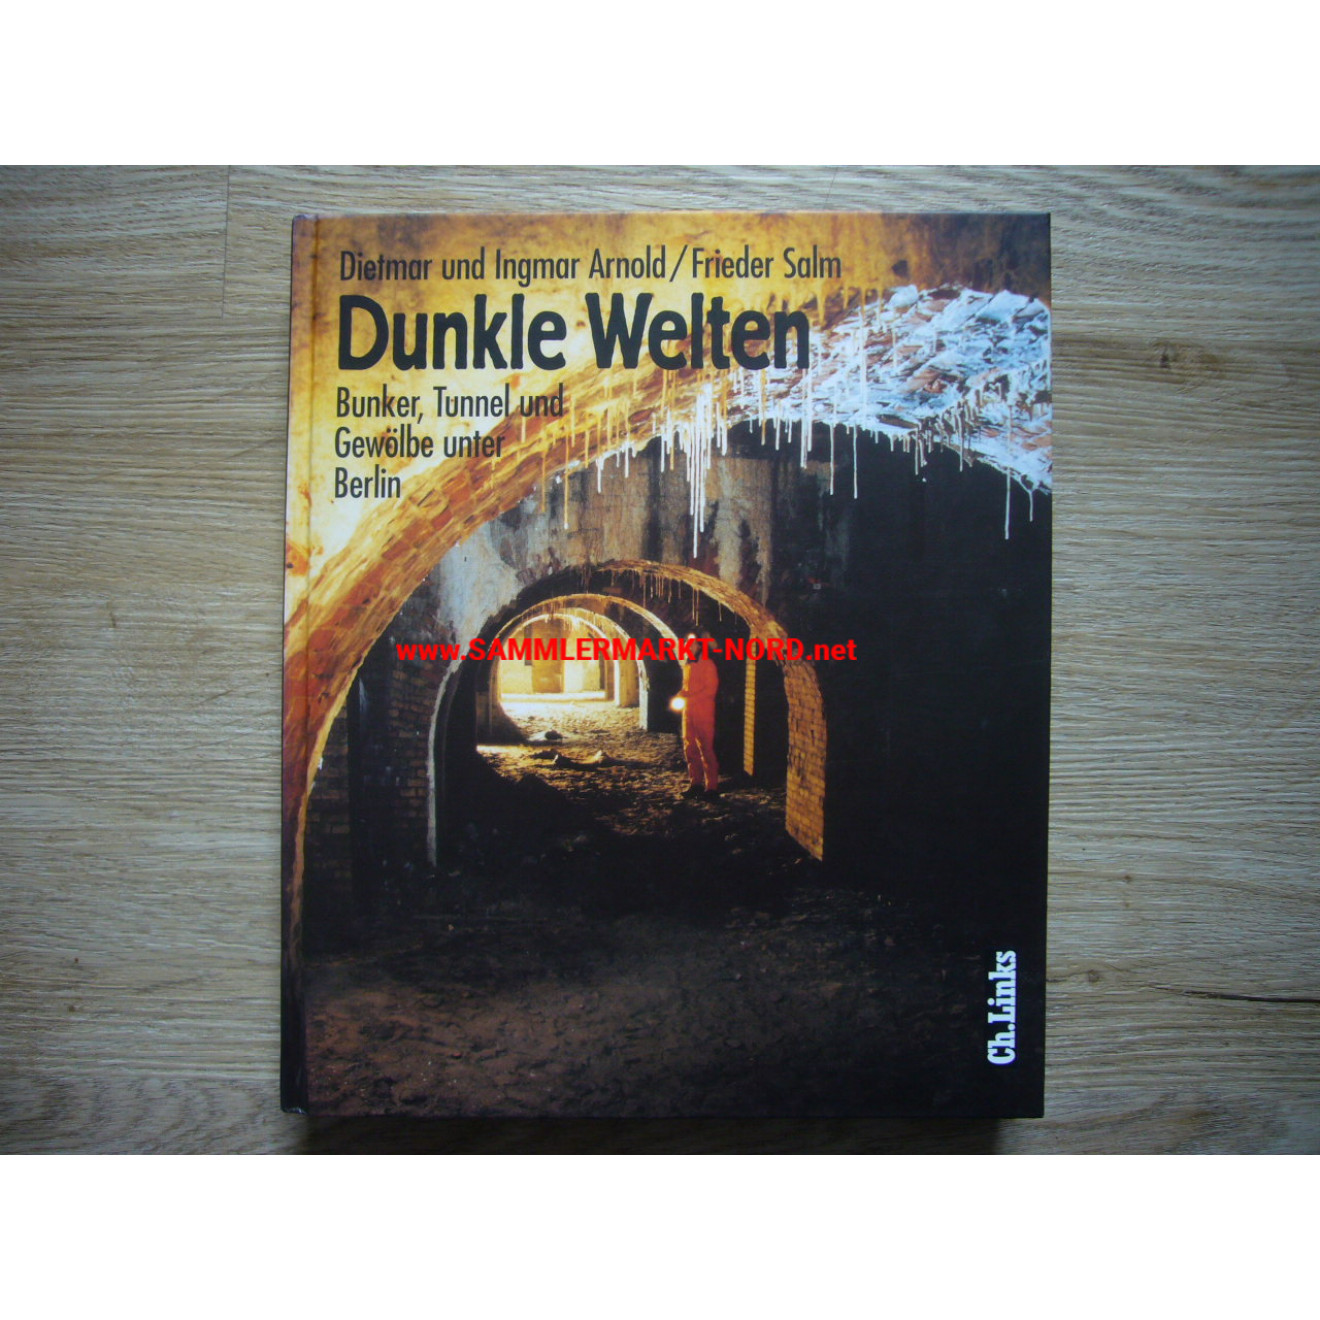 Dunkle Welten - Bunker, Tunnel und Gewölbe unter Berlin